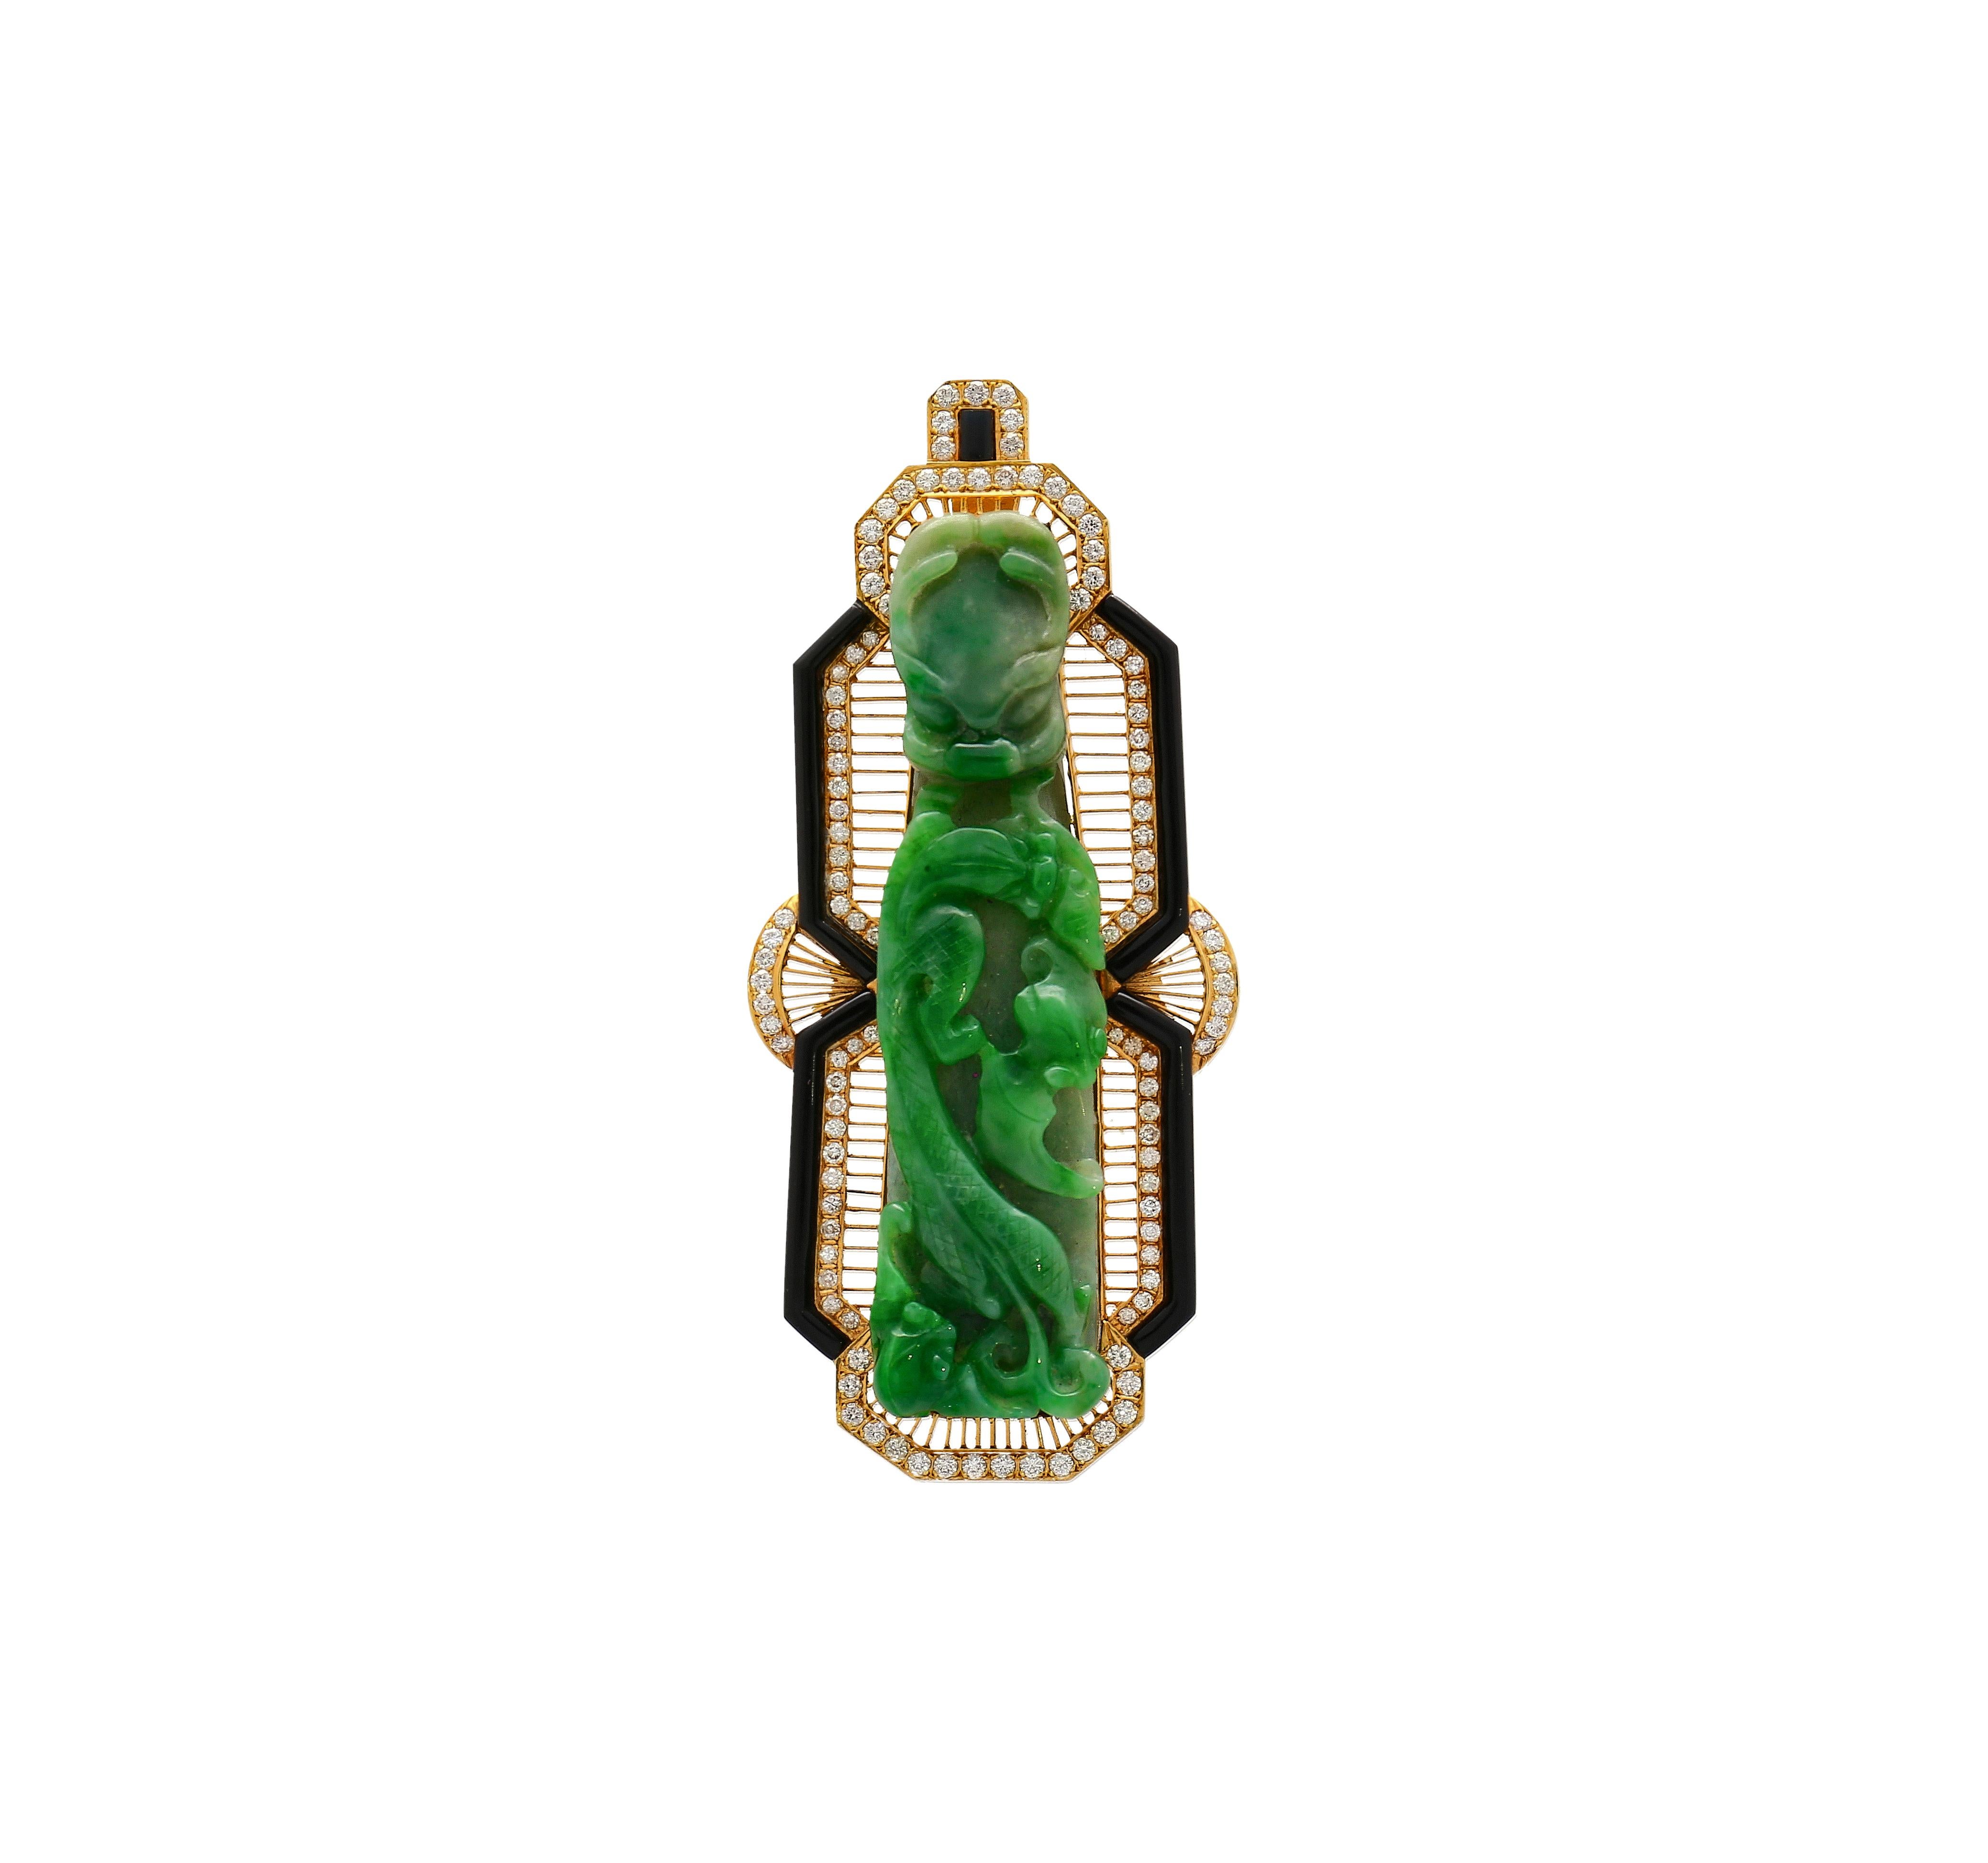 Cette pièce est une magnifique relique antique aux origines incroyables. Le jade jadéite est connu sous le nom de type A, sans rehaussement de résine. Fabriqué à partir d'un motif 